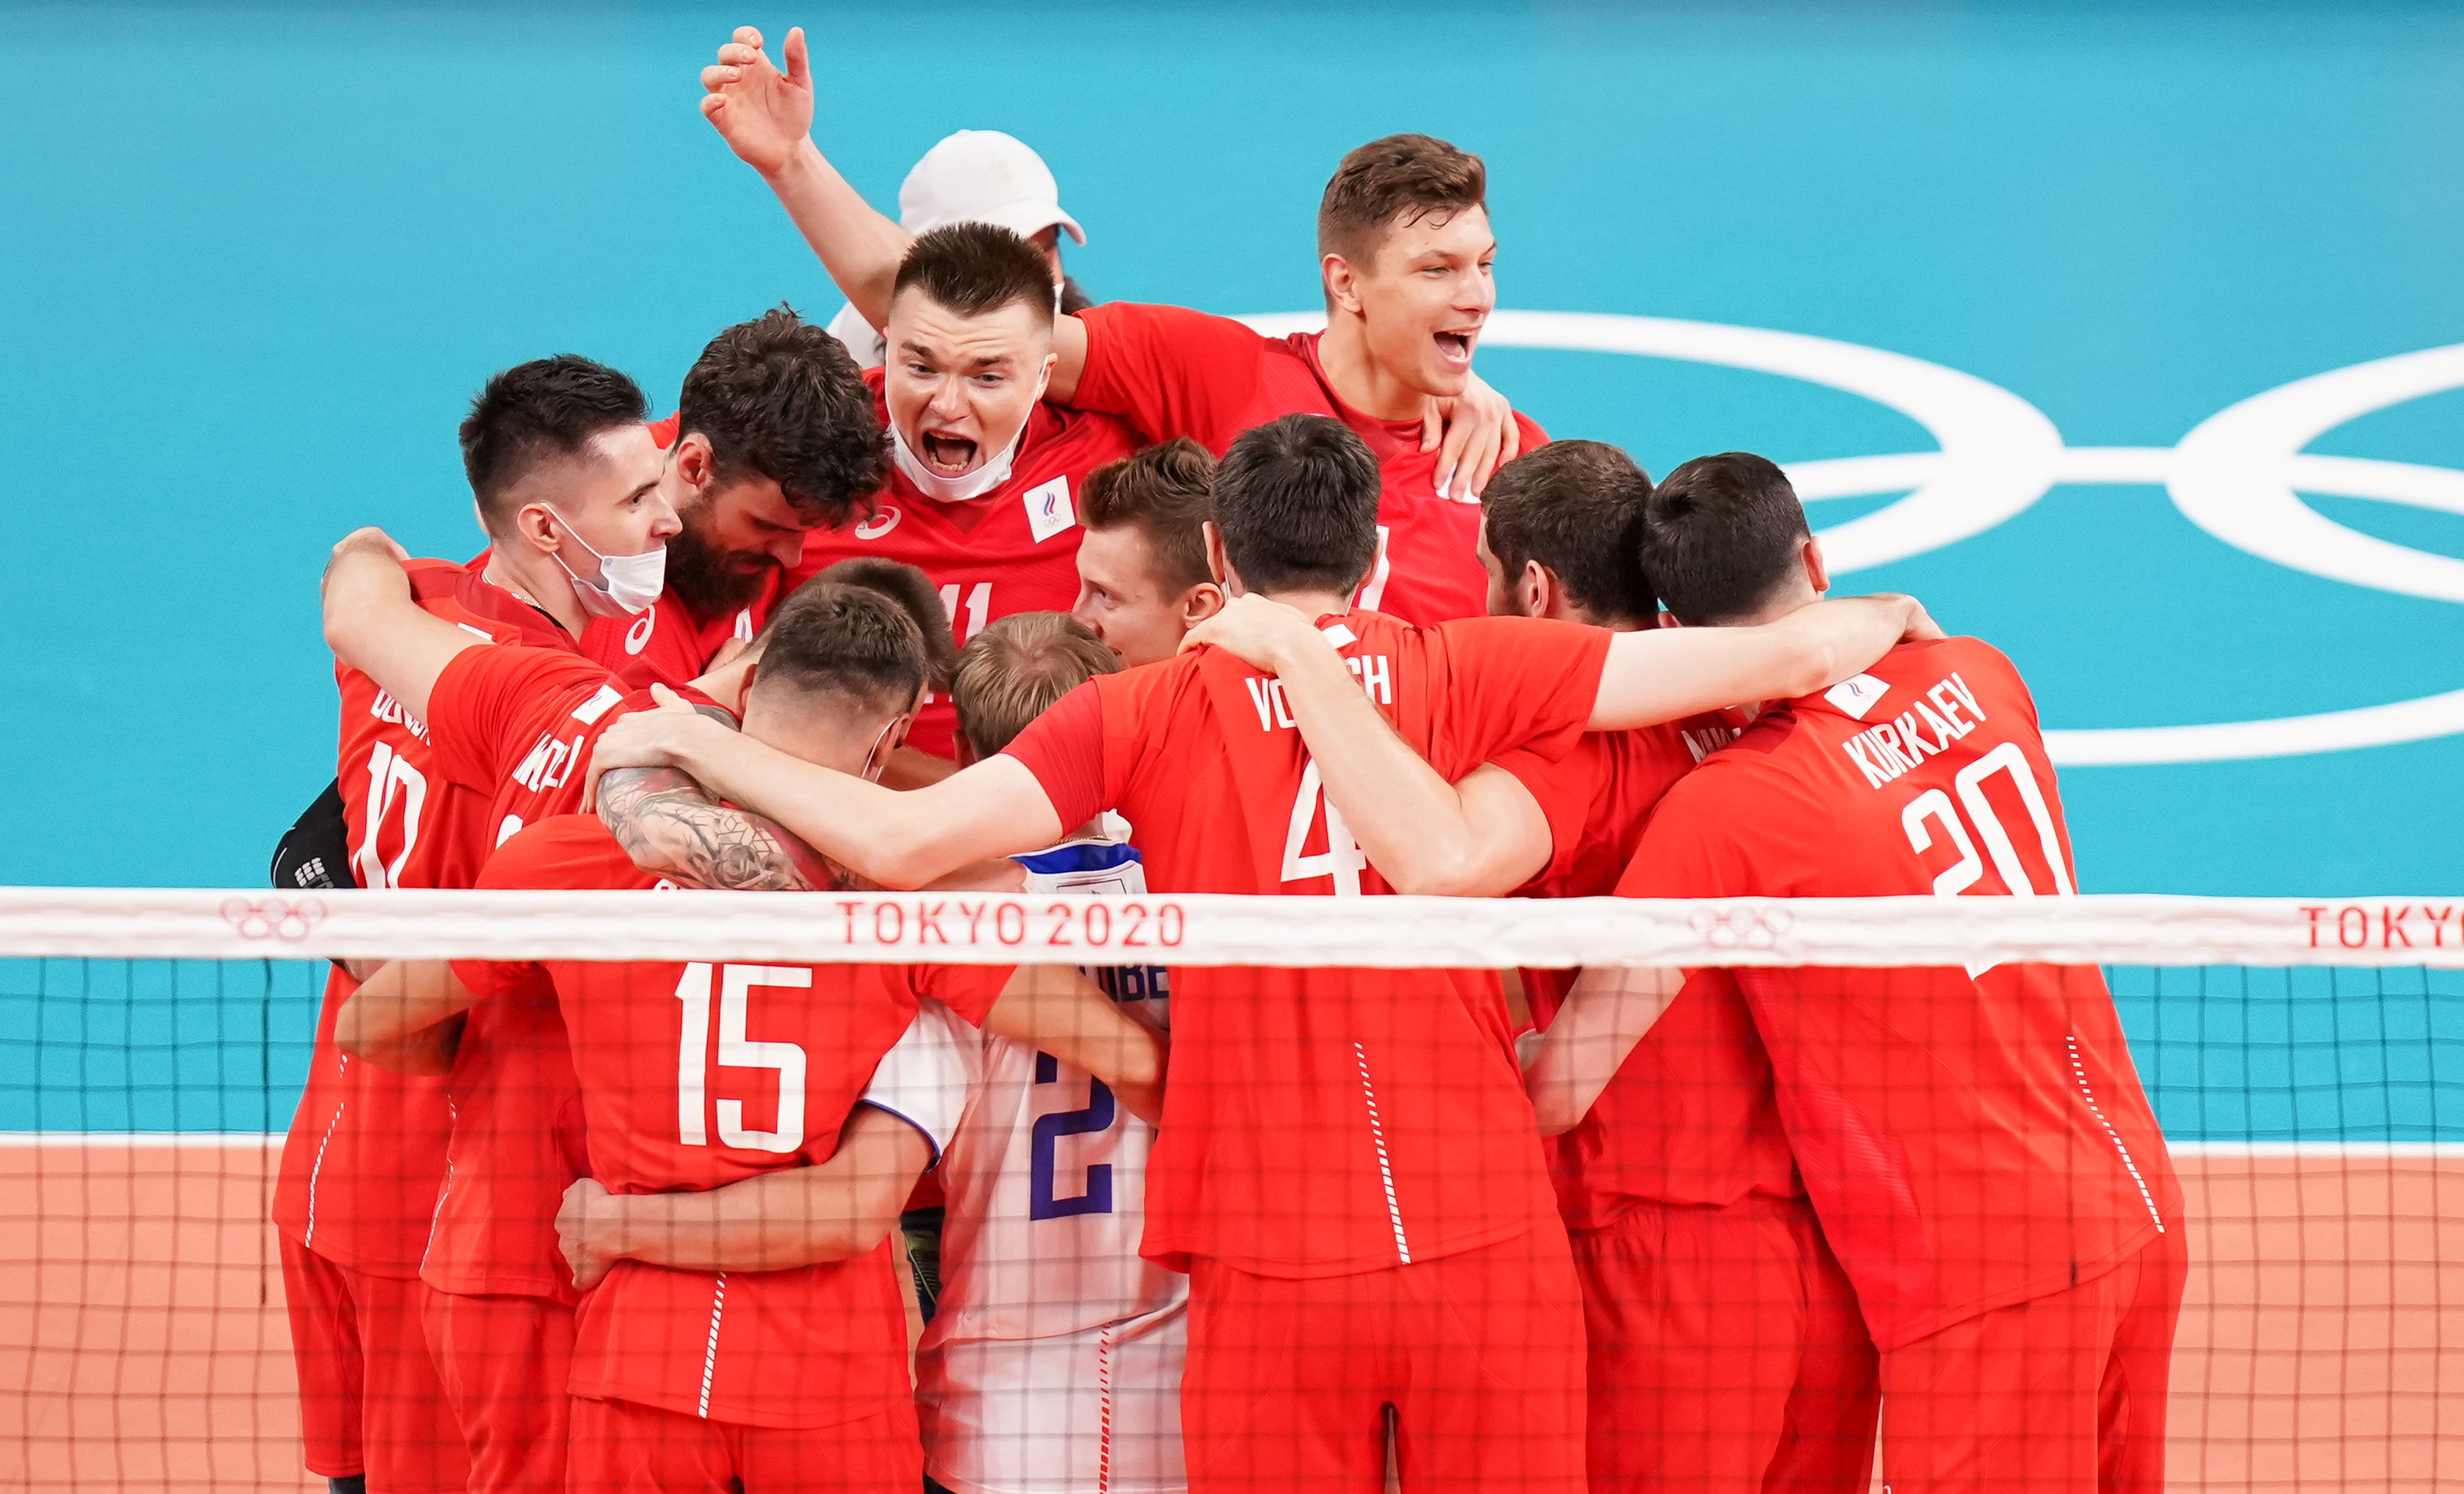 排球—男排:俄罗斯运动员晋级决赛